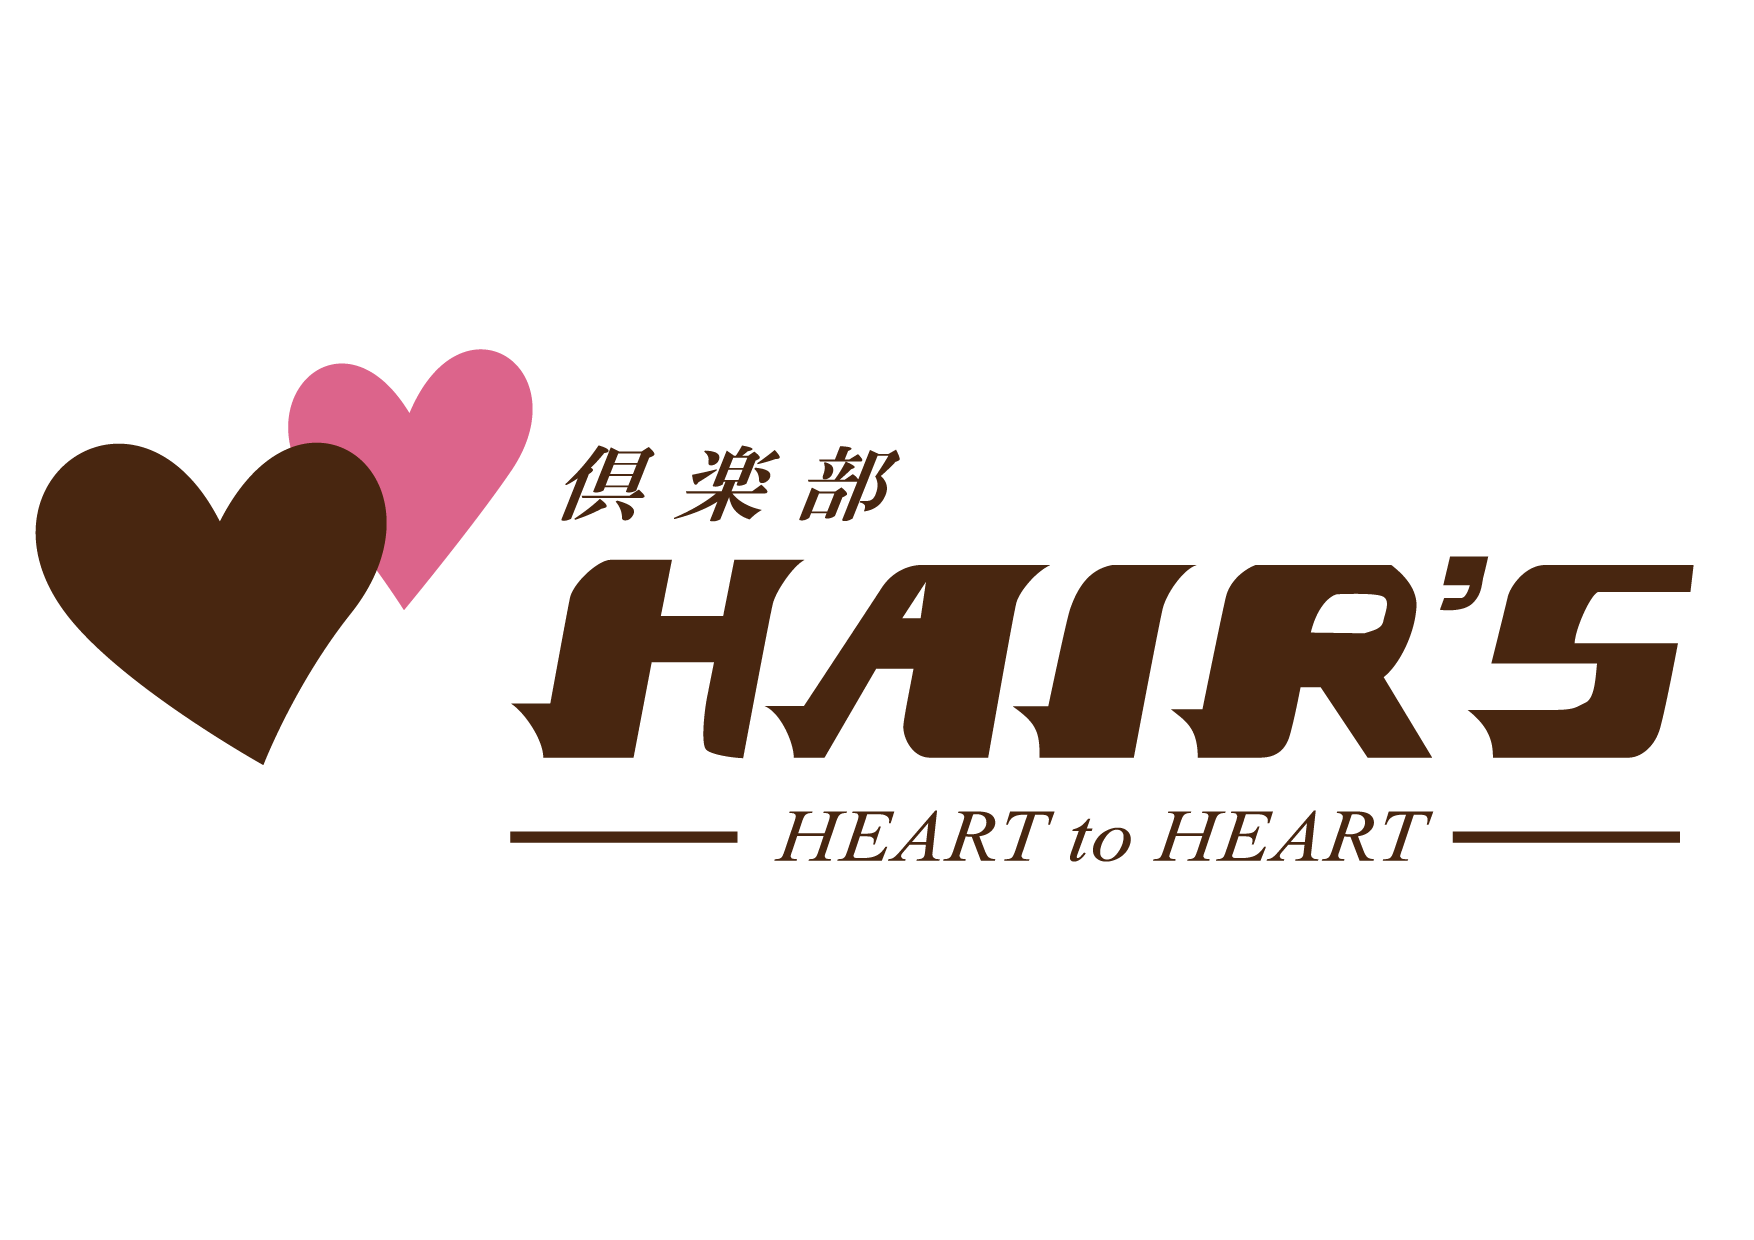 倶楽部HAIR'S 醍醐本店